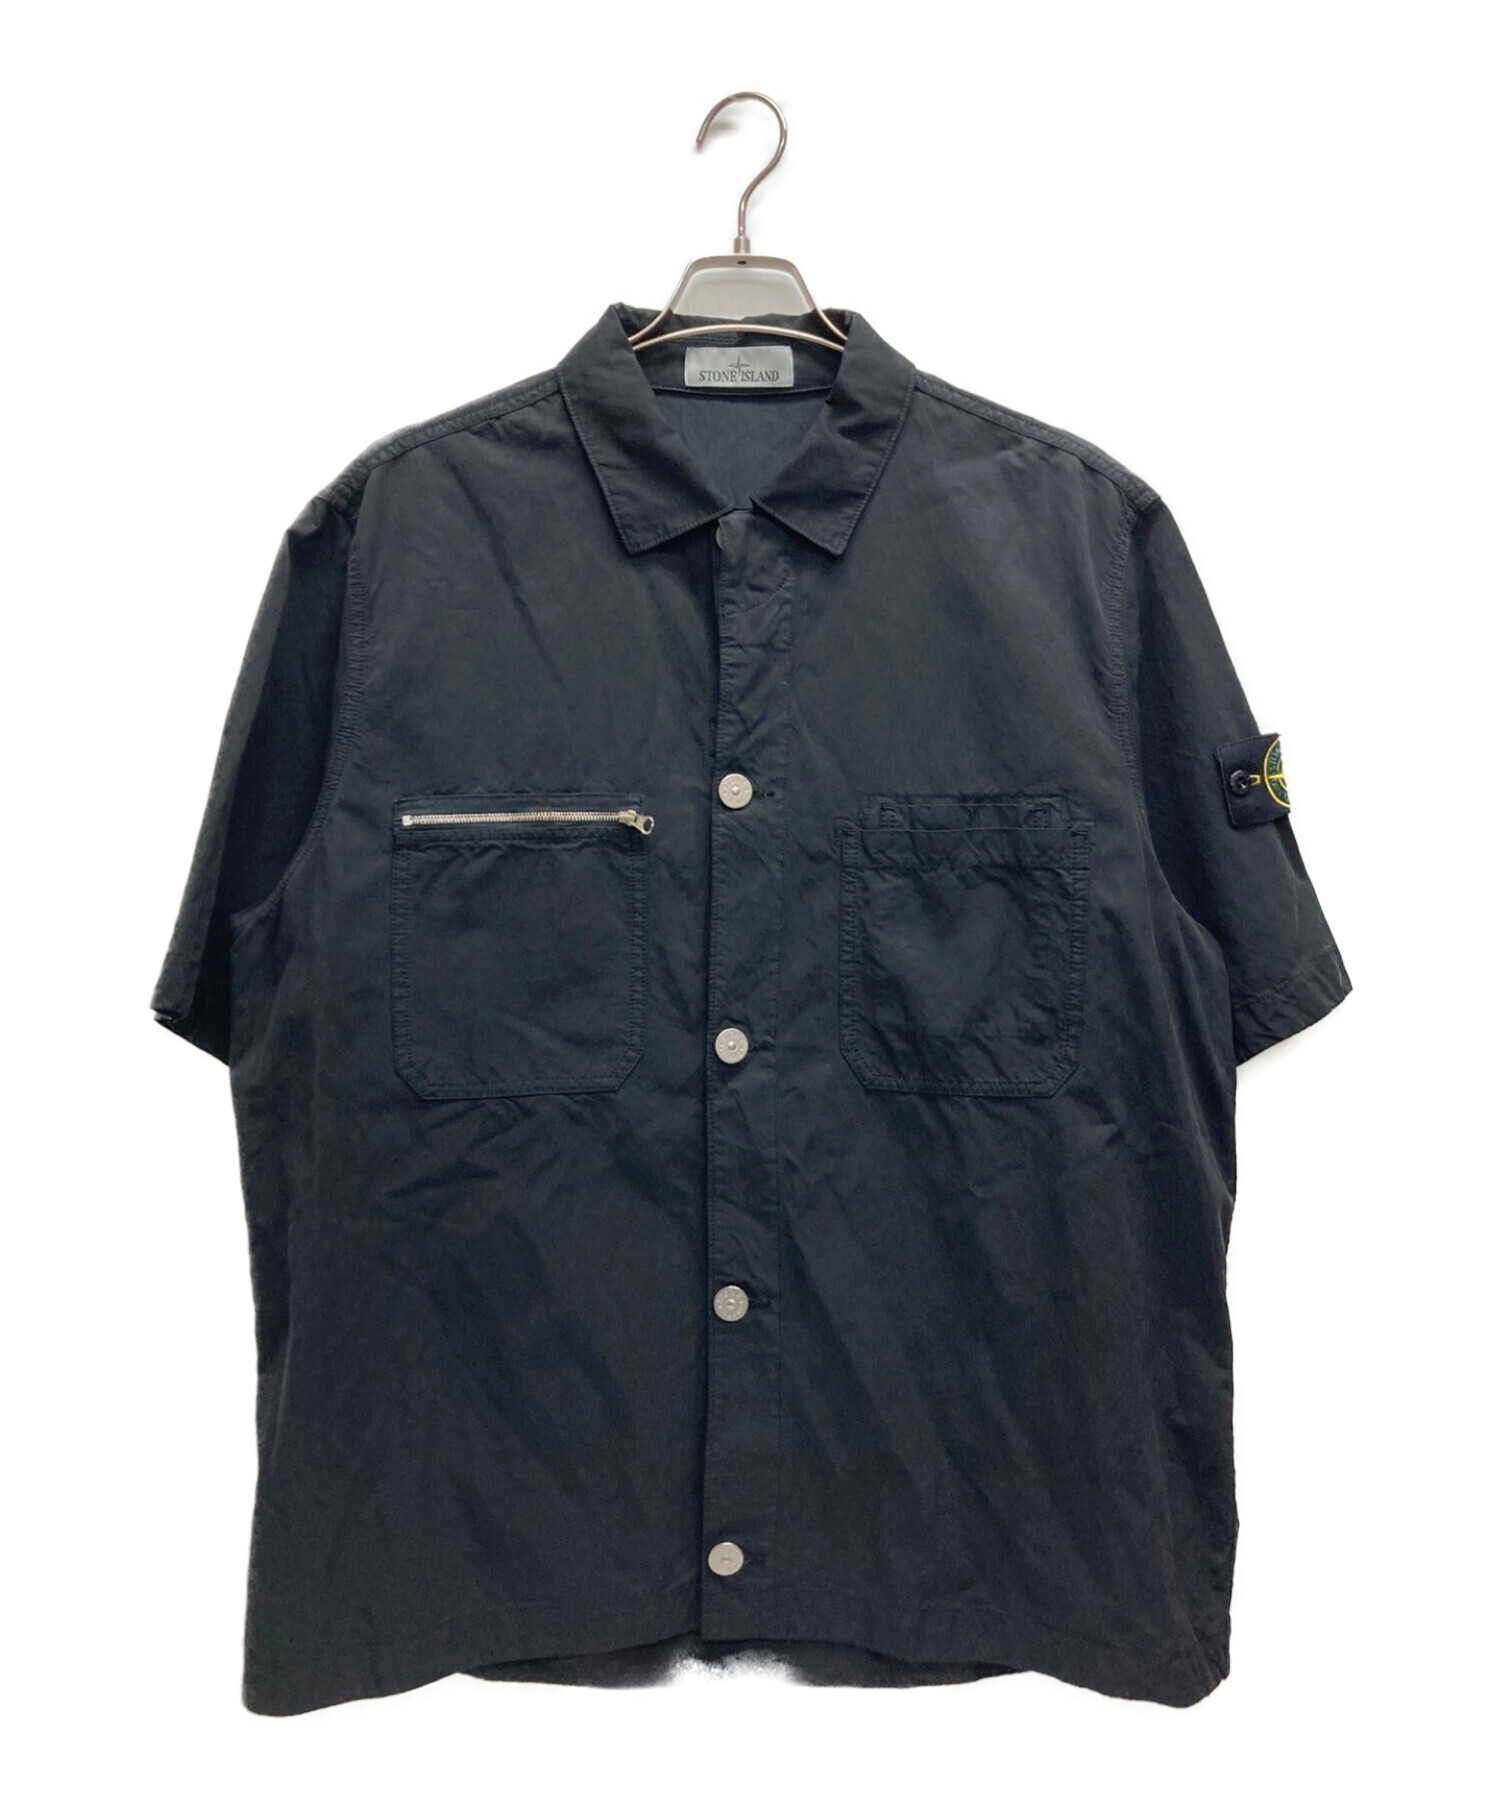 STONE ISLAND (ストーンアイランド) ショートスリーブシャツ ブラック サイズ:L